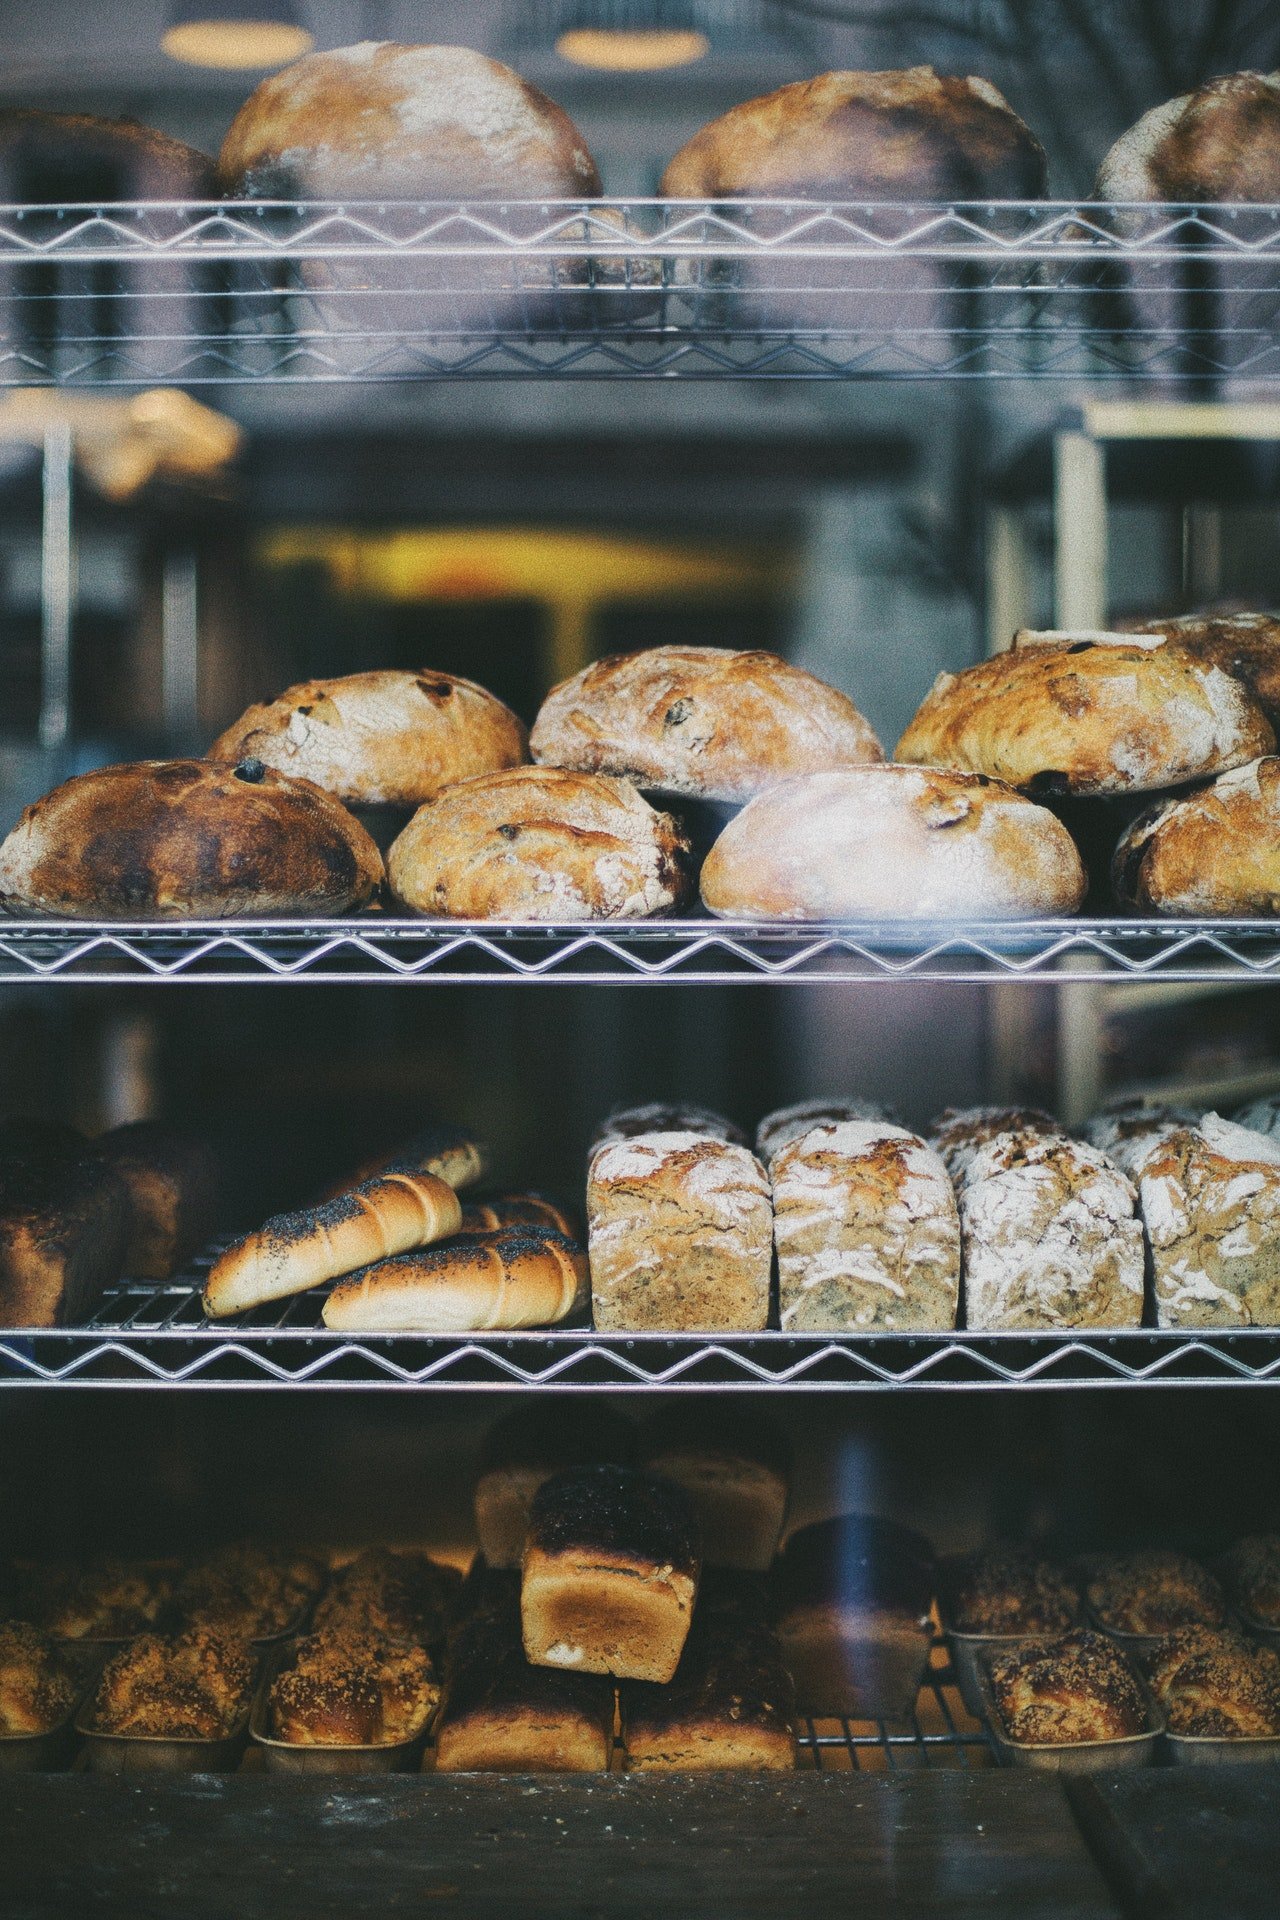 Sie kaufte ihm das berühmte Brot, von dem er schwärmte, und sagte, es sei ihre gute Tat für heute. | Quelle: Pexels